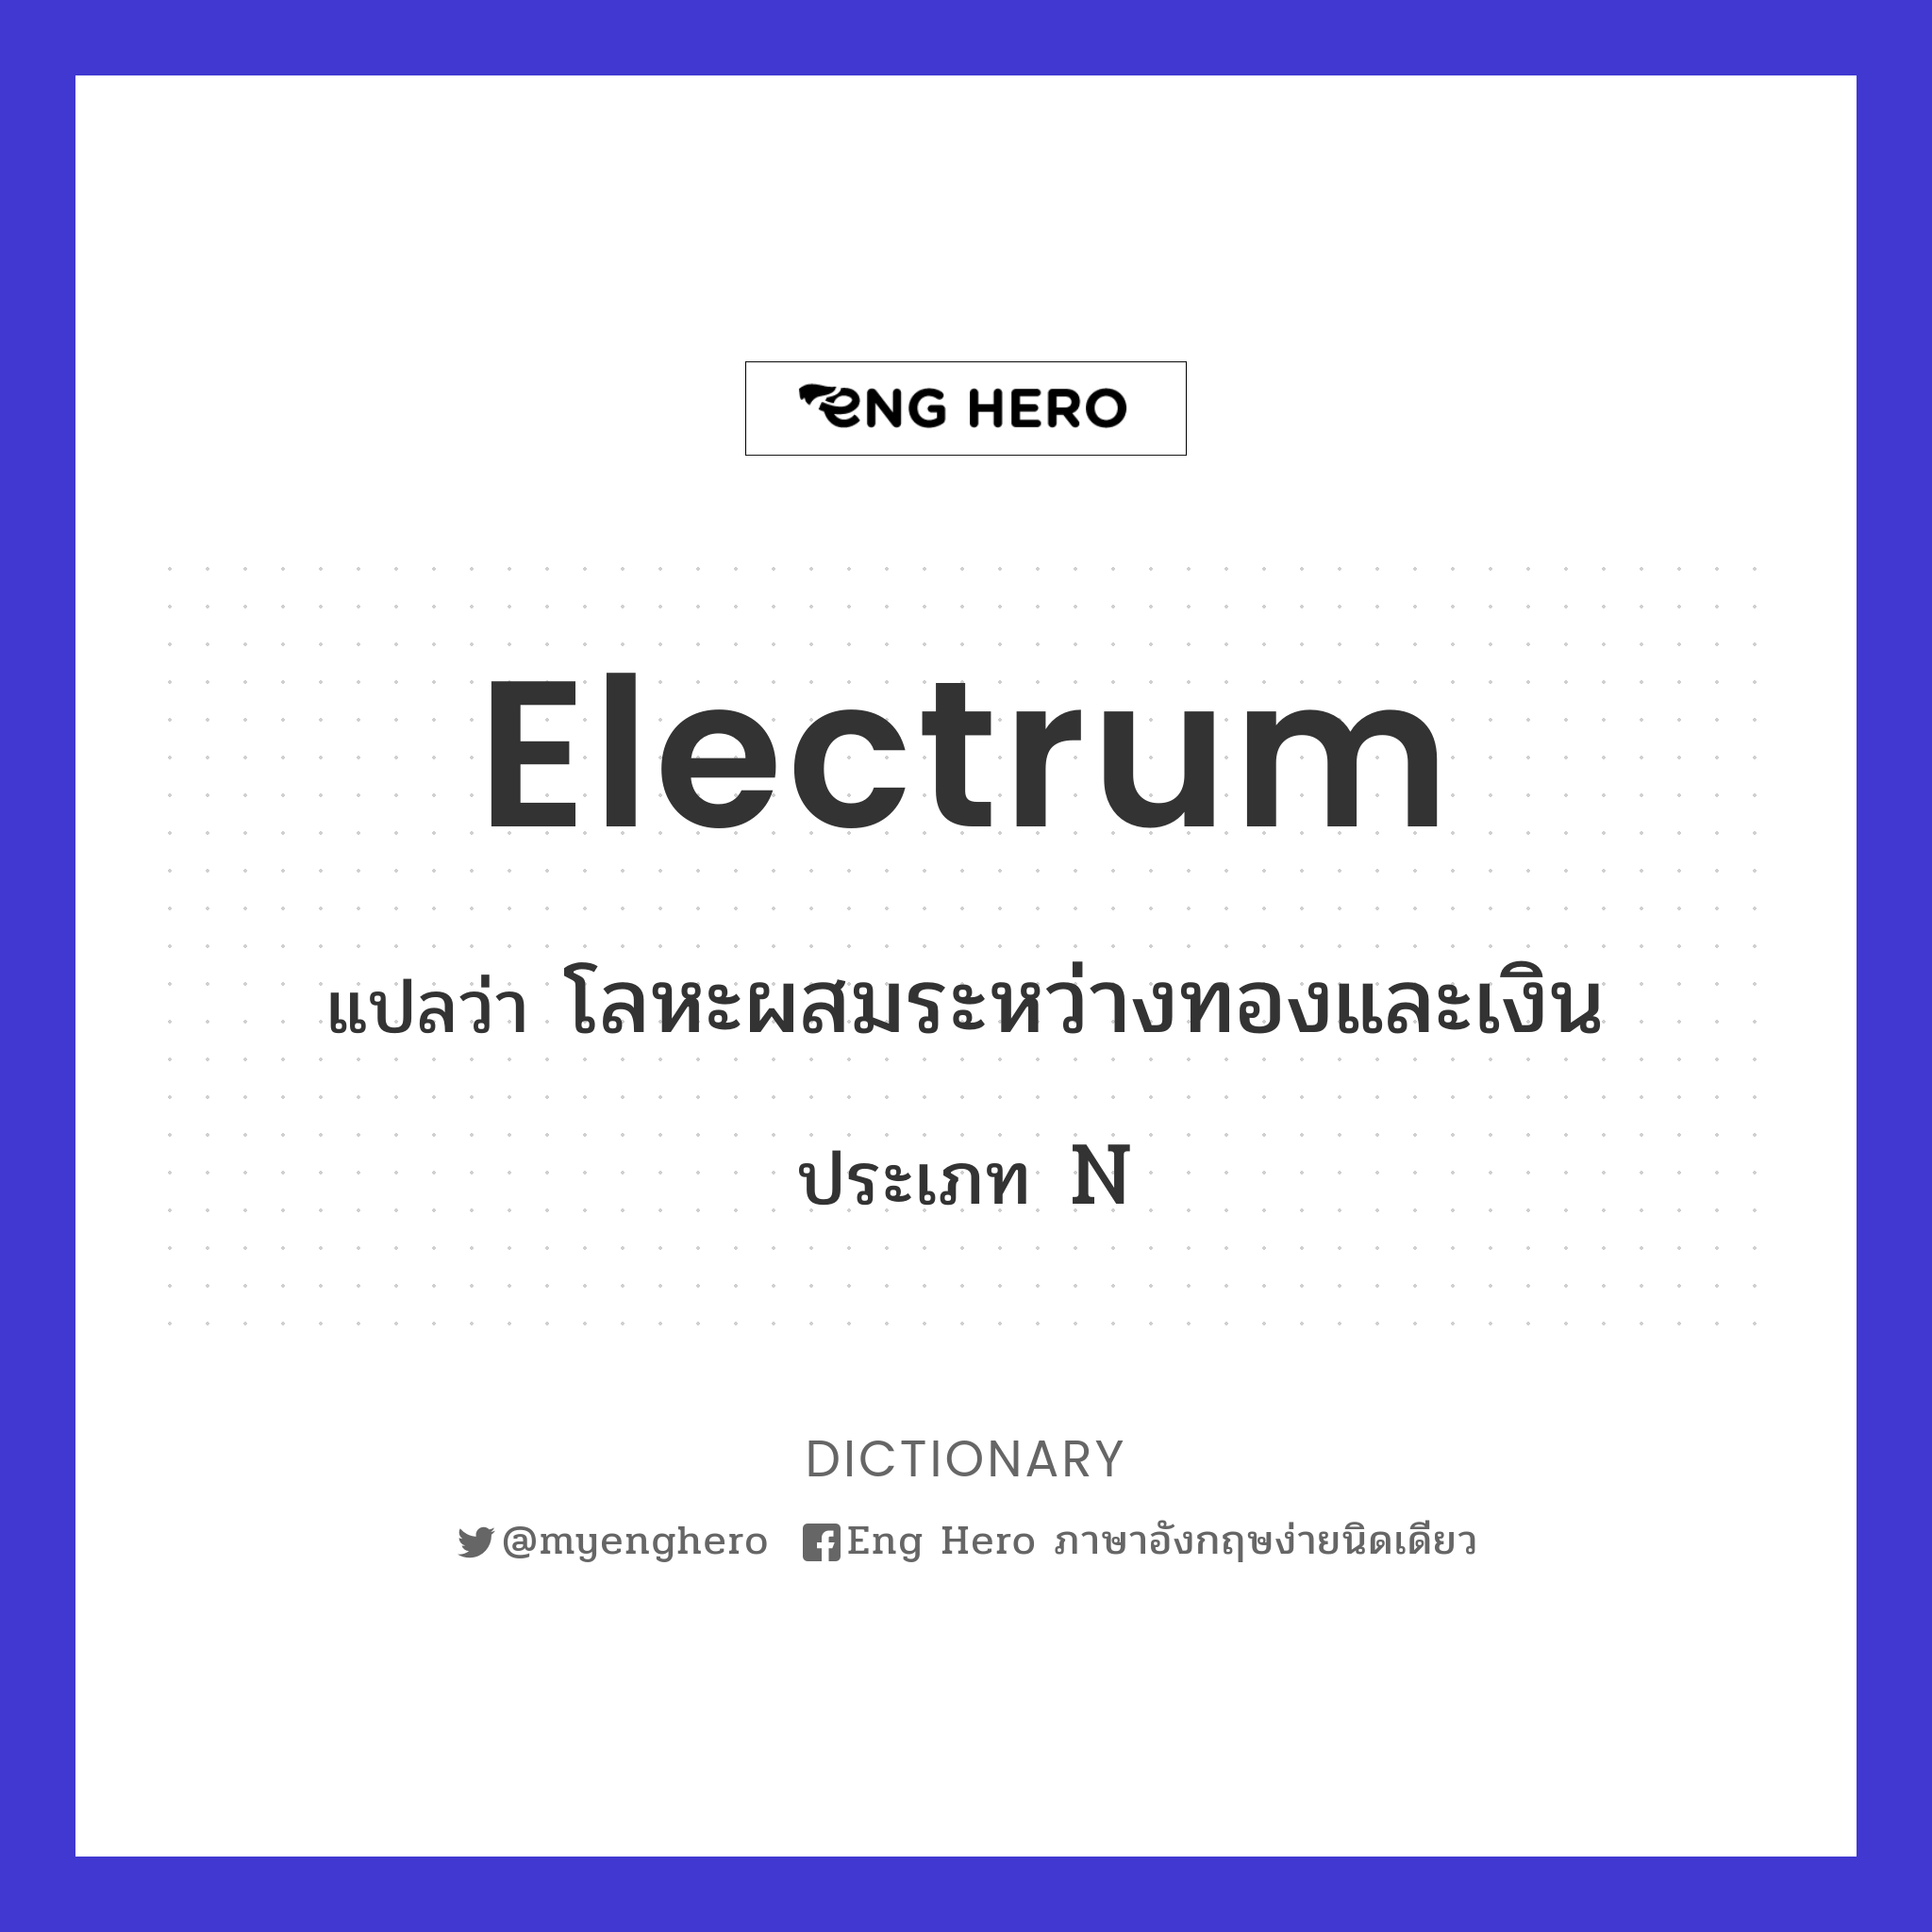 electrum